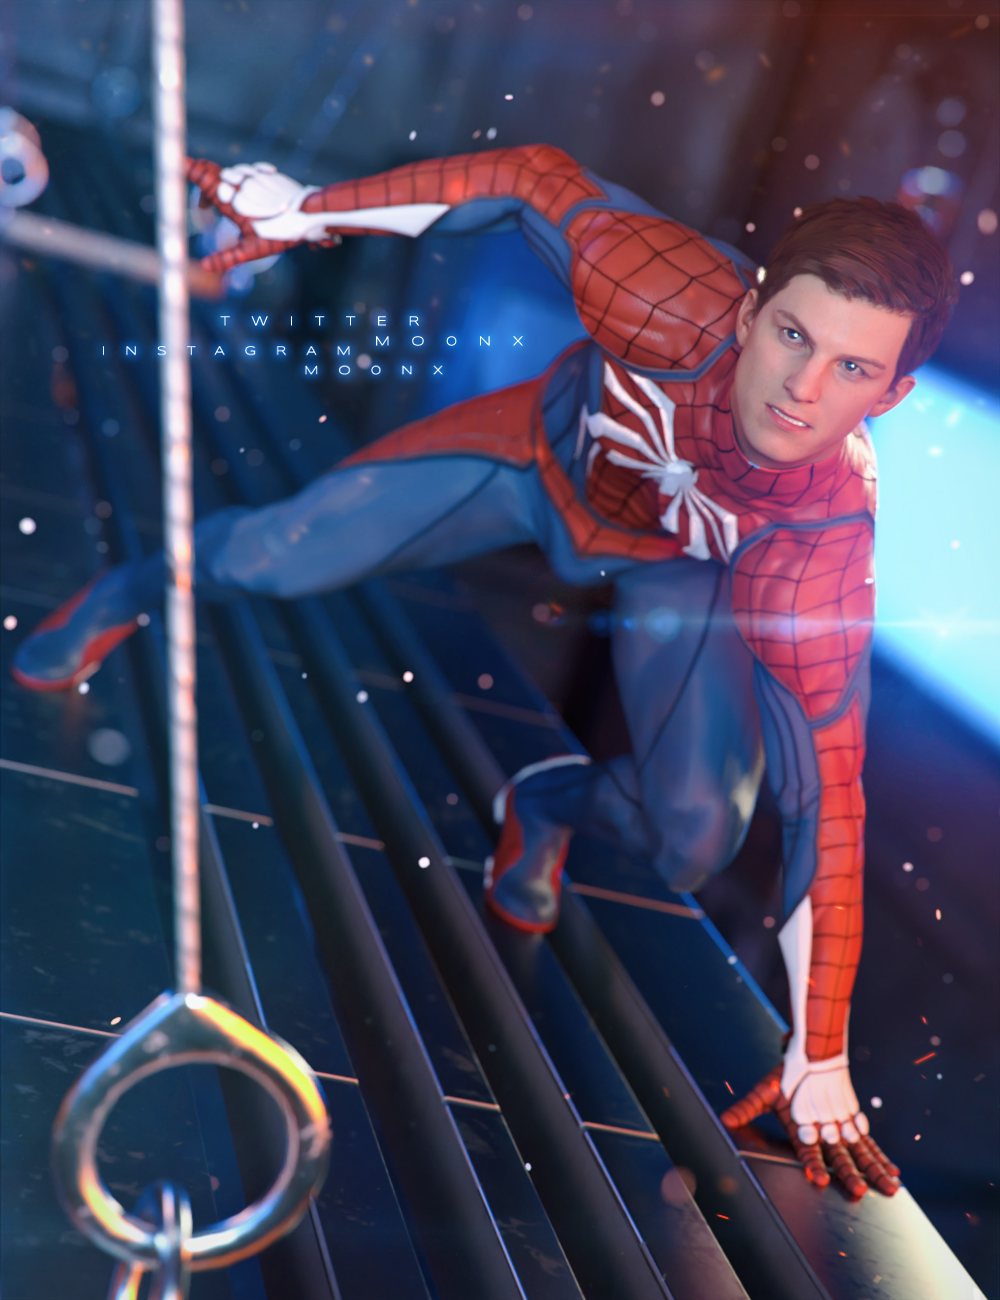 Spider-Man Remastered traz Peter Parker com novo visual e mais